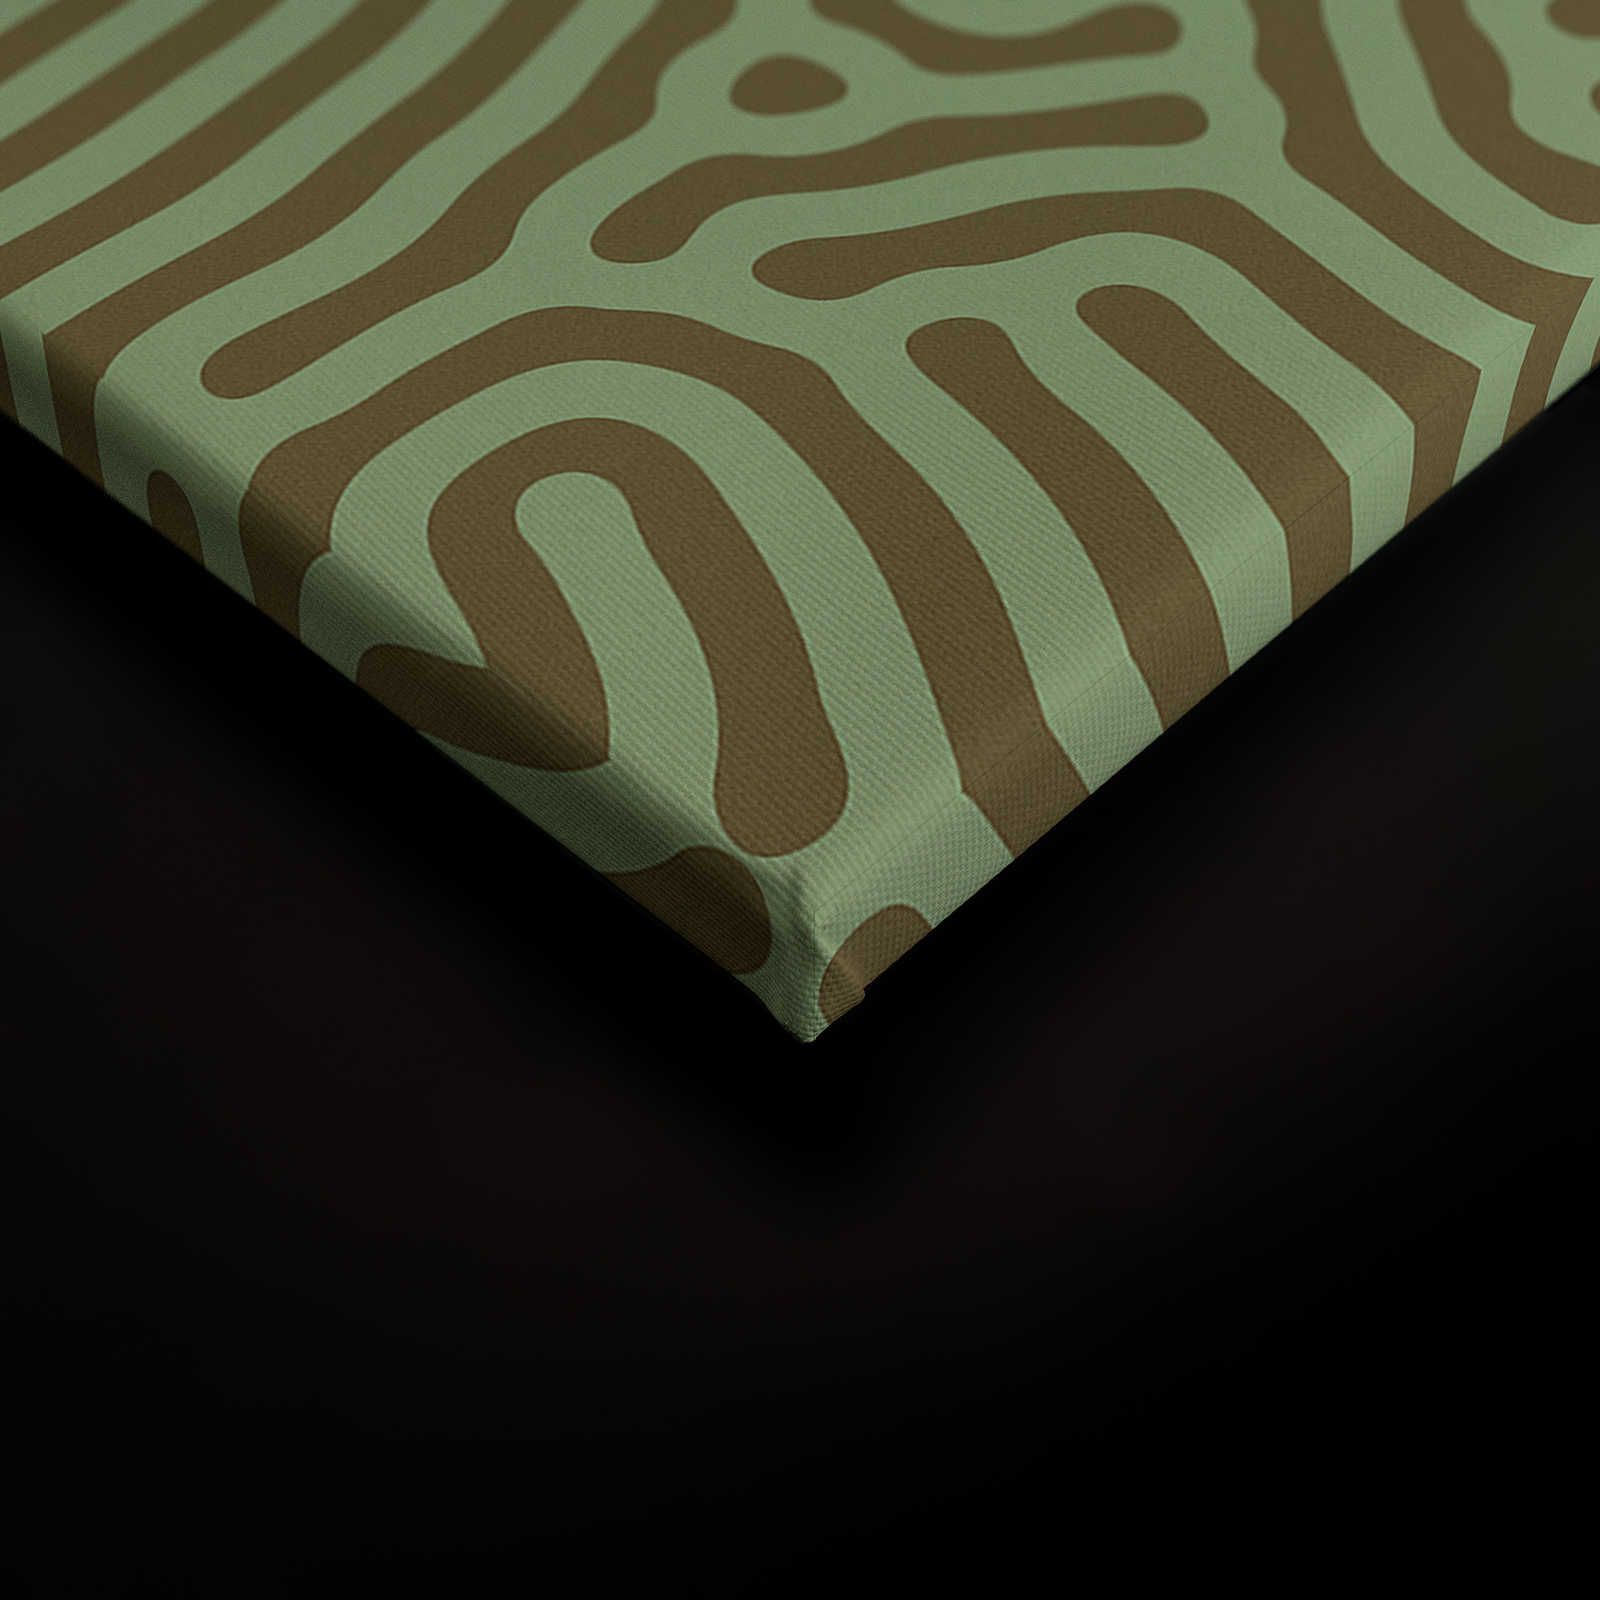             Sahel 1 - Grünes Leinwandbild Labyrinth Muster Salbeigrün – 0,90 m x 0,60 m
        